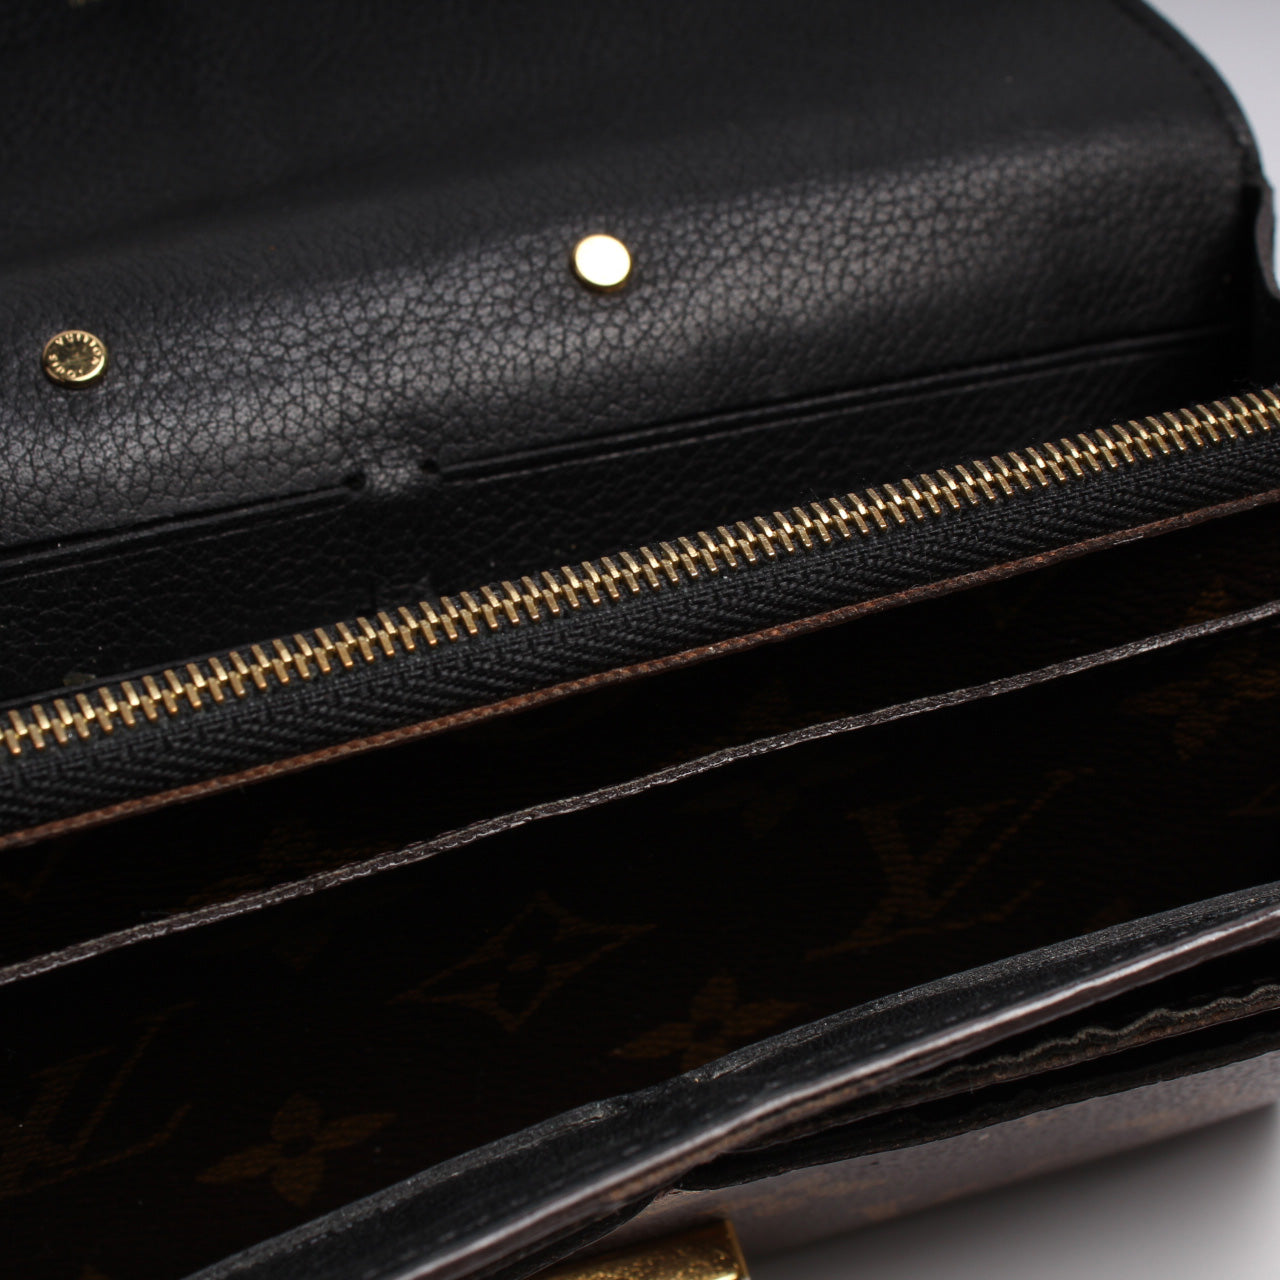 Pallas Wallet Compact Wallet Monogram – Keeks Designer Handbags